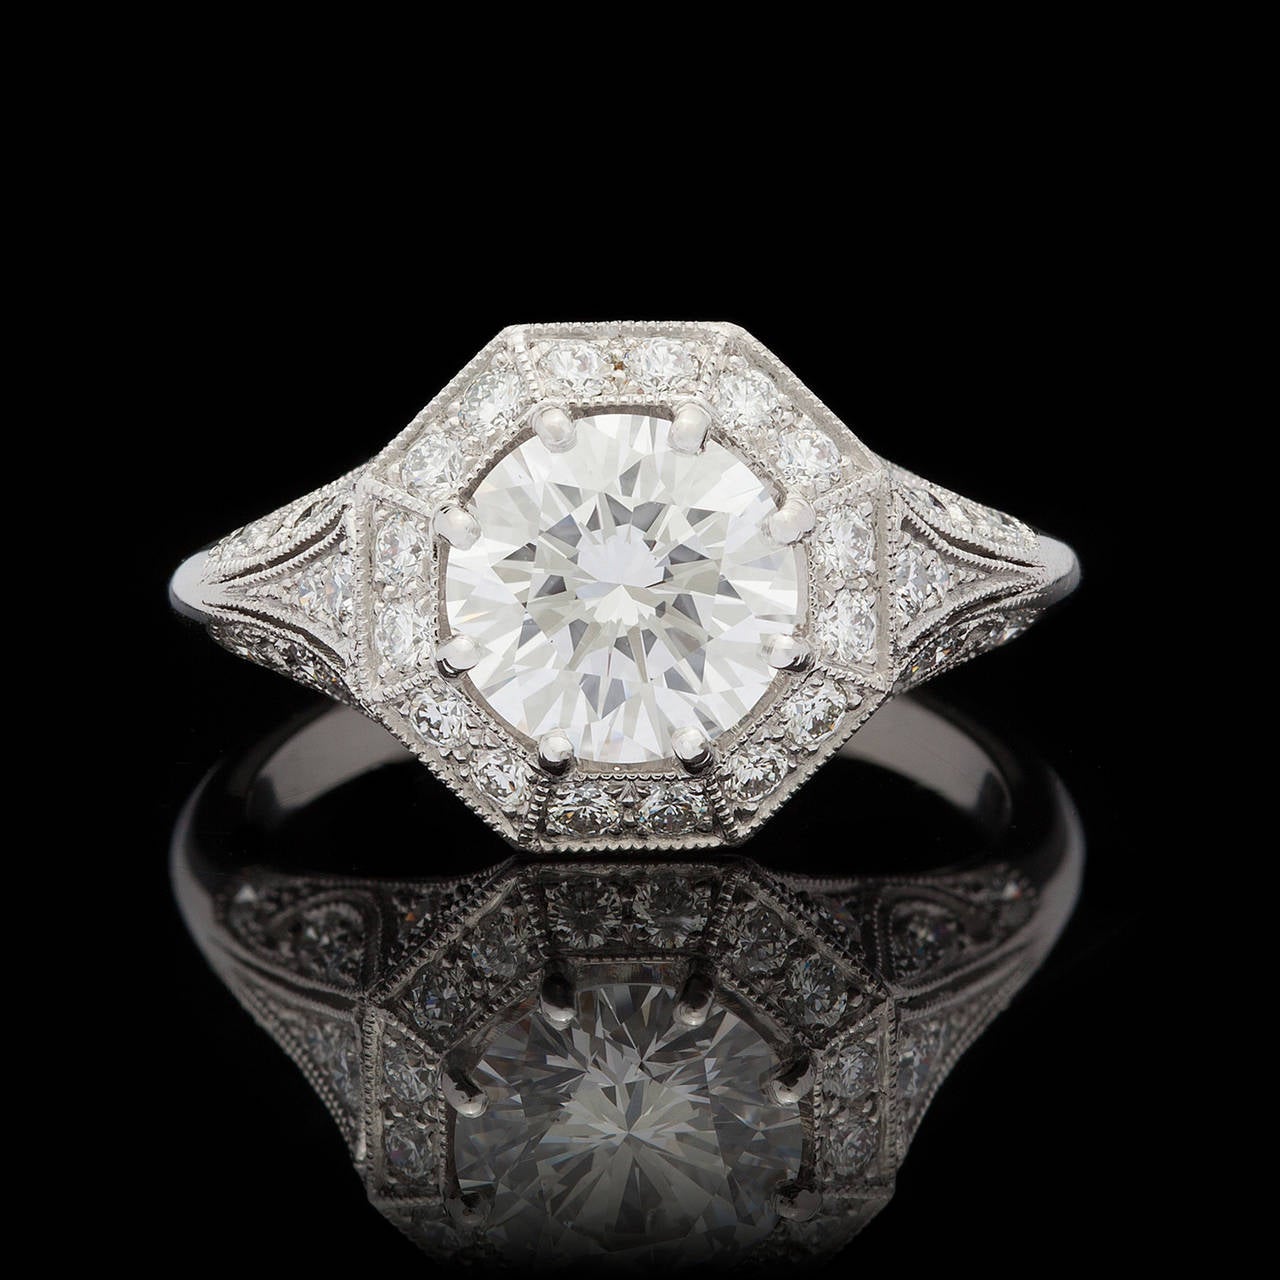 Edwardian Colorless 1.69 Carat GIA Certified Diamond Platinum Ring